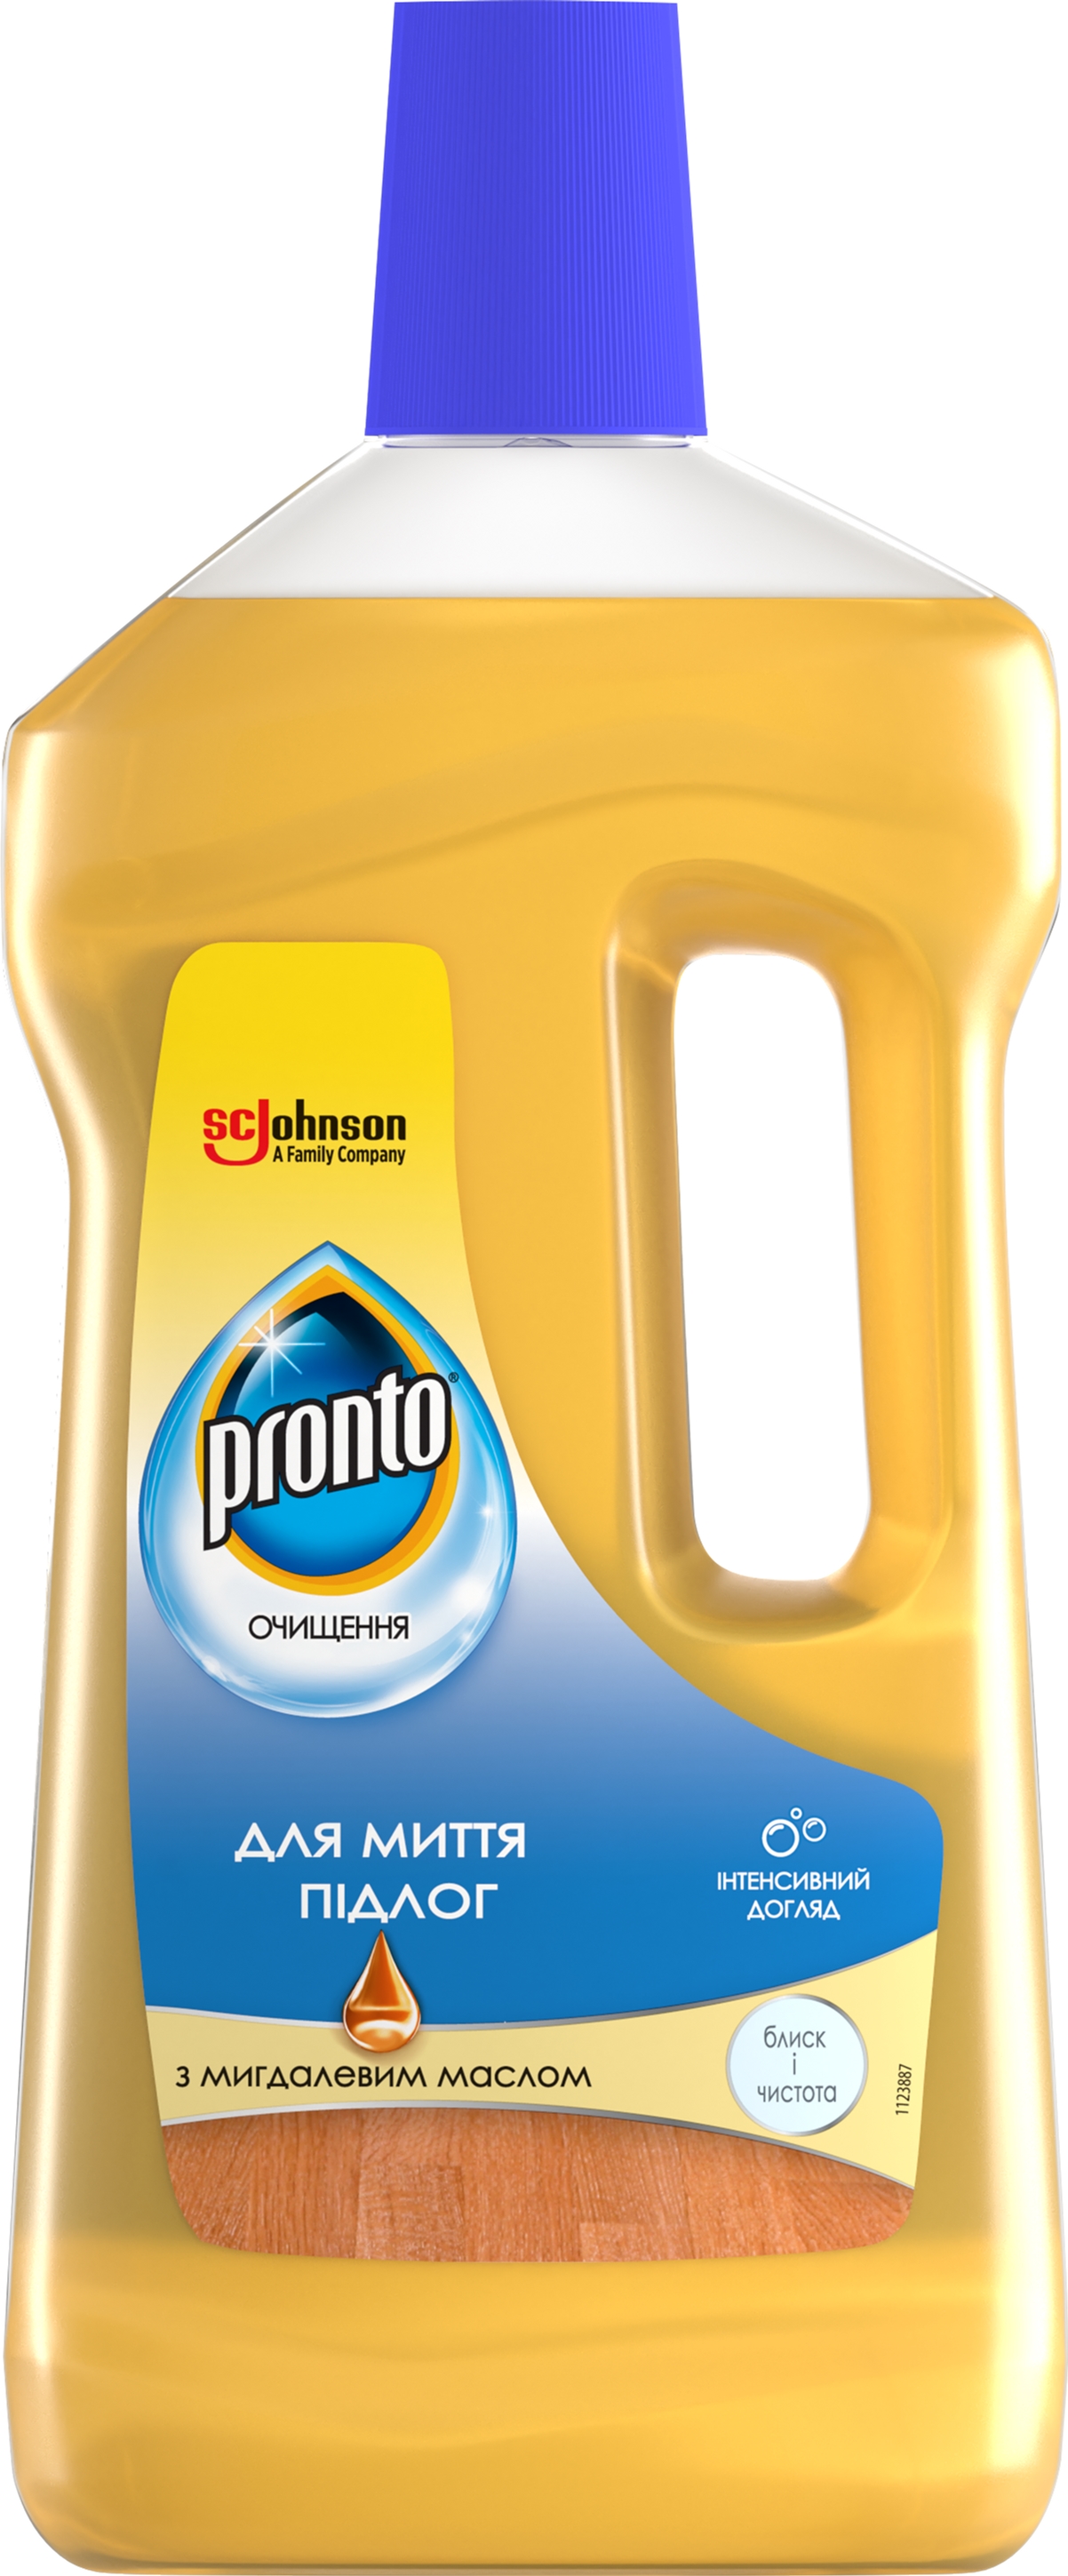 Средство для мытья полов Pronto c миндальным маслом 750 мл .